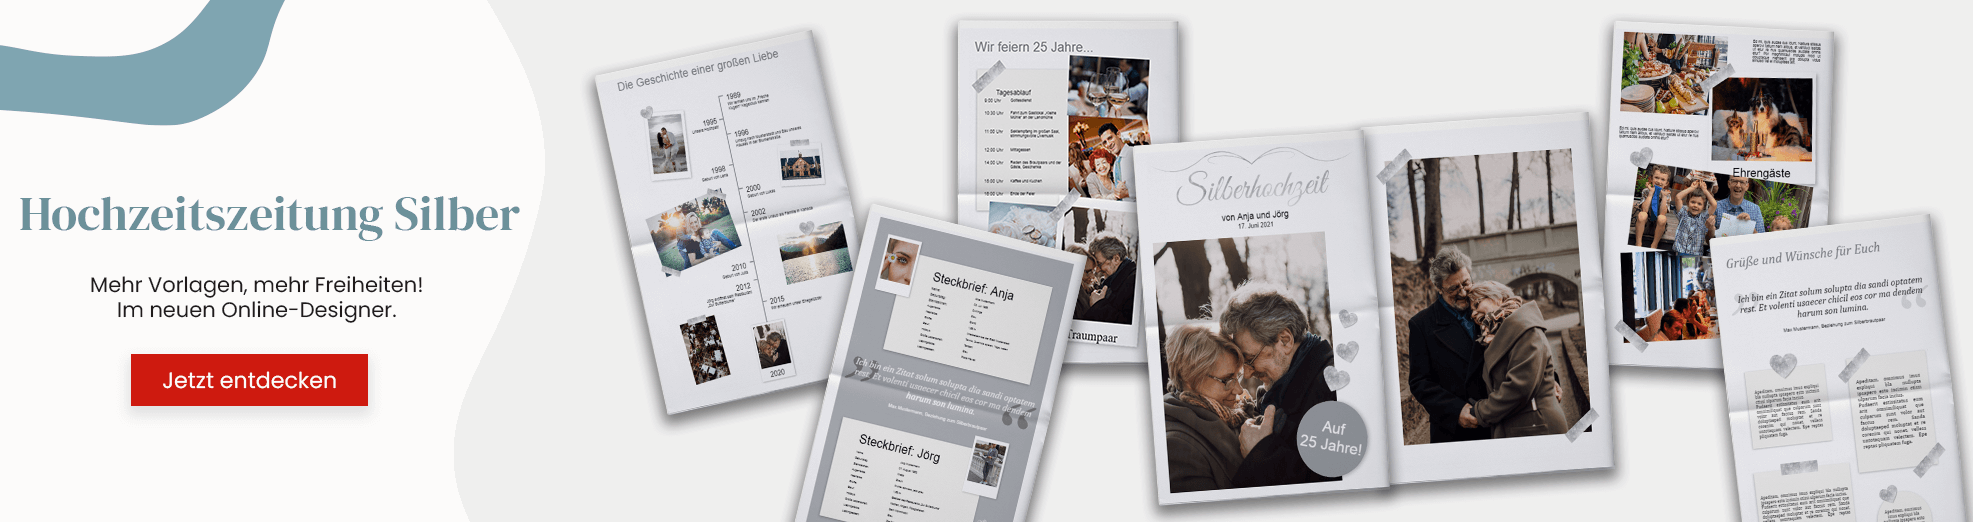 Mehr Vorlagen für Silberne Hochzeitszeitungen im neuen Online-Designer